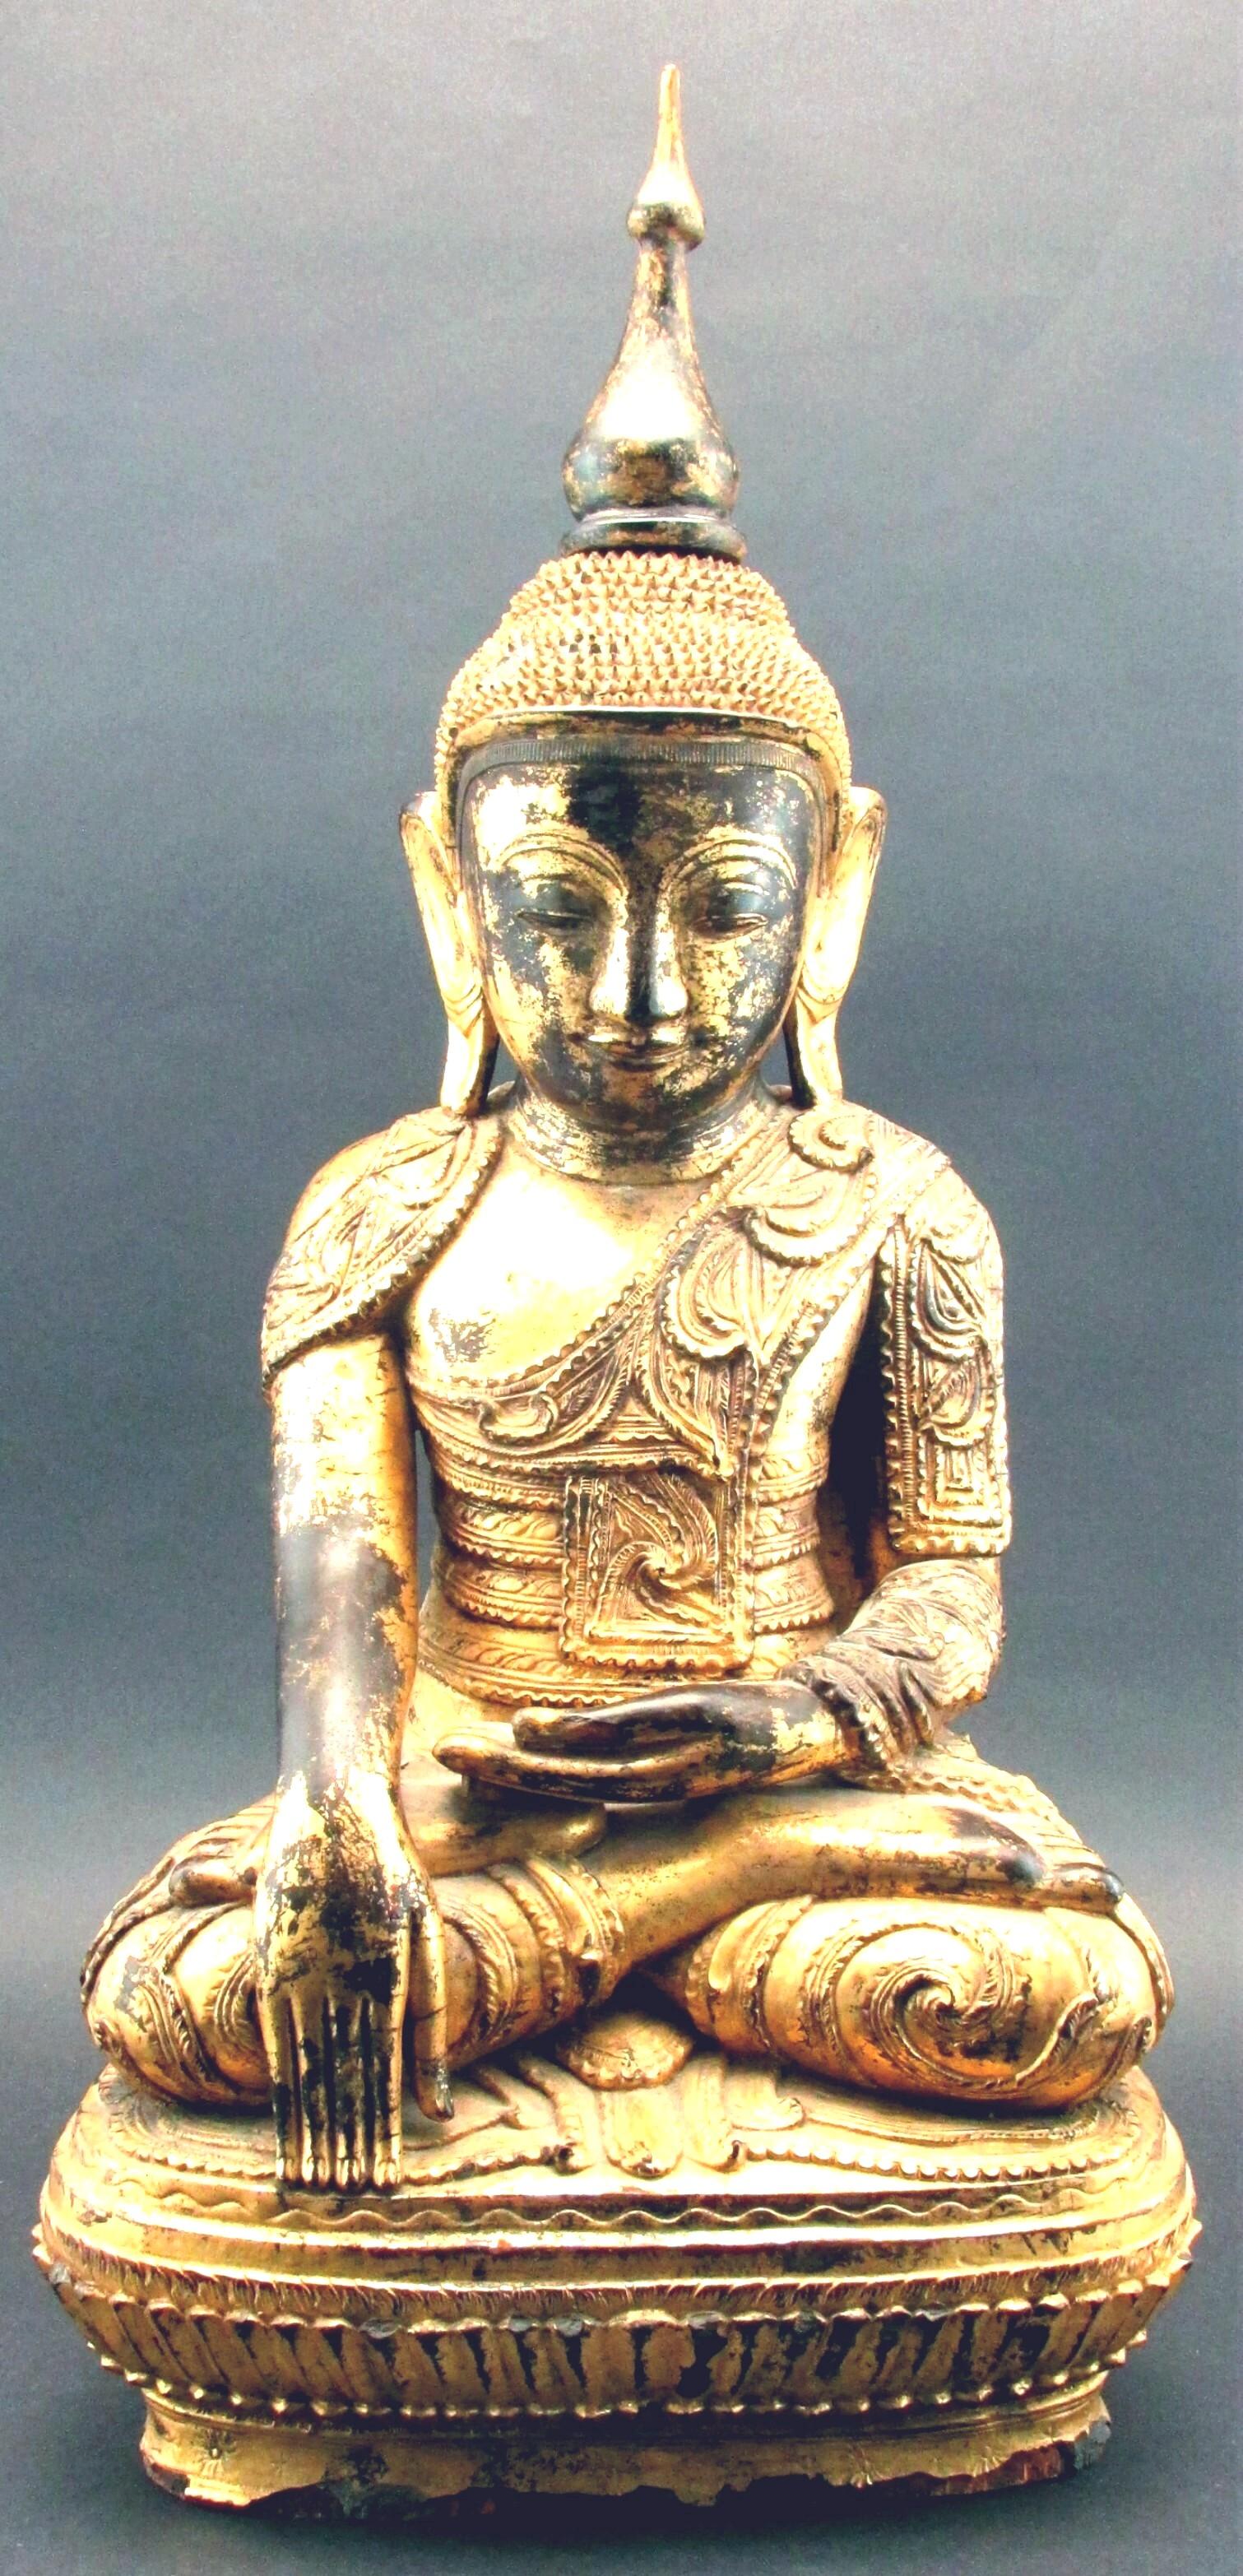 Eine sehr beeindruckende und außergewöhnlich feine Hand geschnitzt, schwarz lackiert und vergoldet Shan-Stil Buddha. Dargestellt in einem fein geschnitzten und detailreichen Mönchsgewand, das Gesicht mit einem gelassenen, meditativen Ausdruck, die